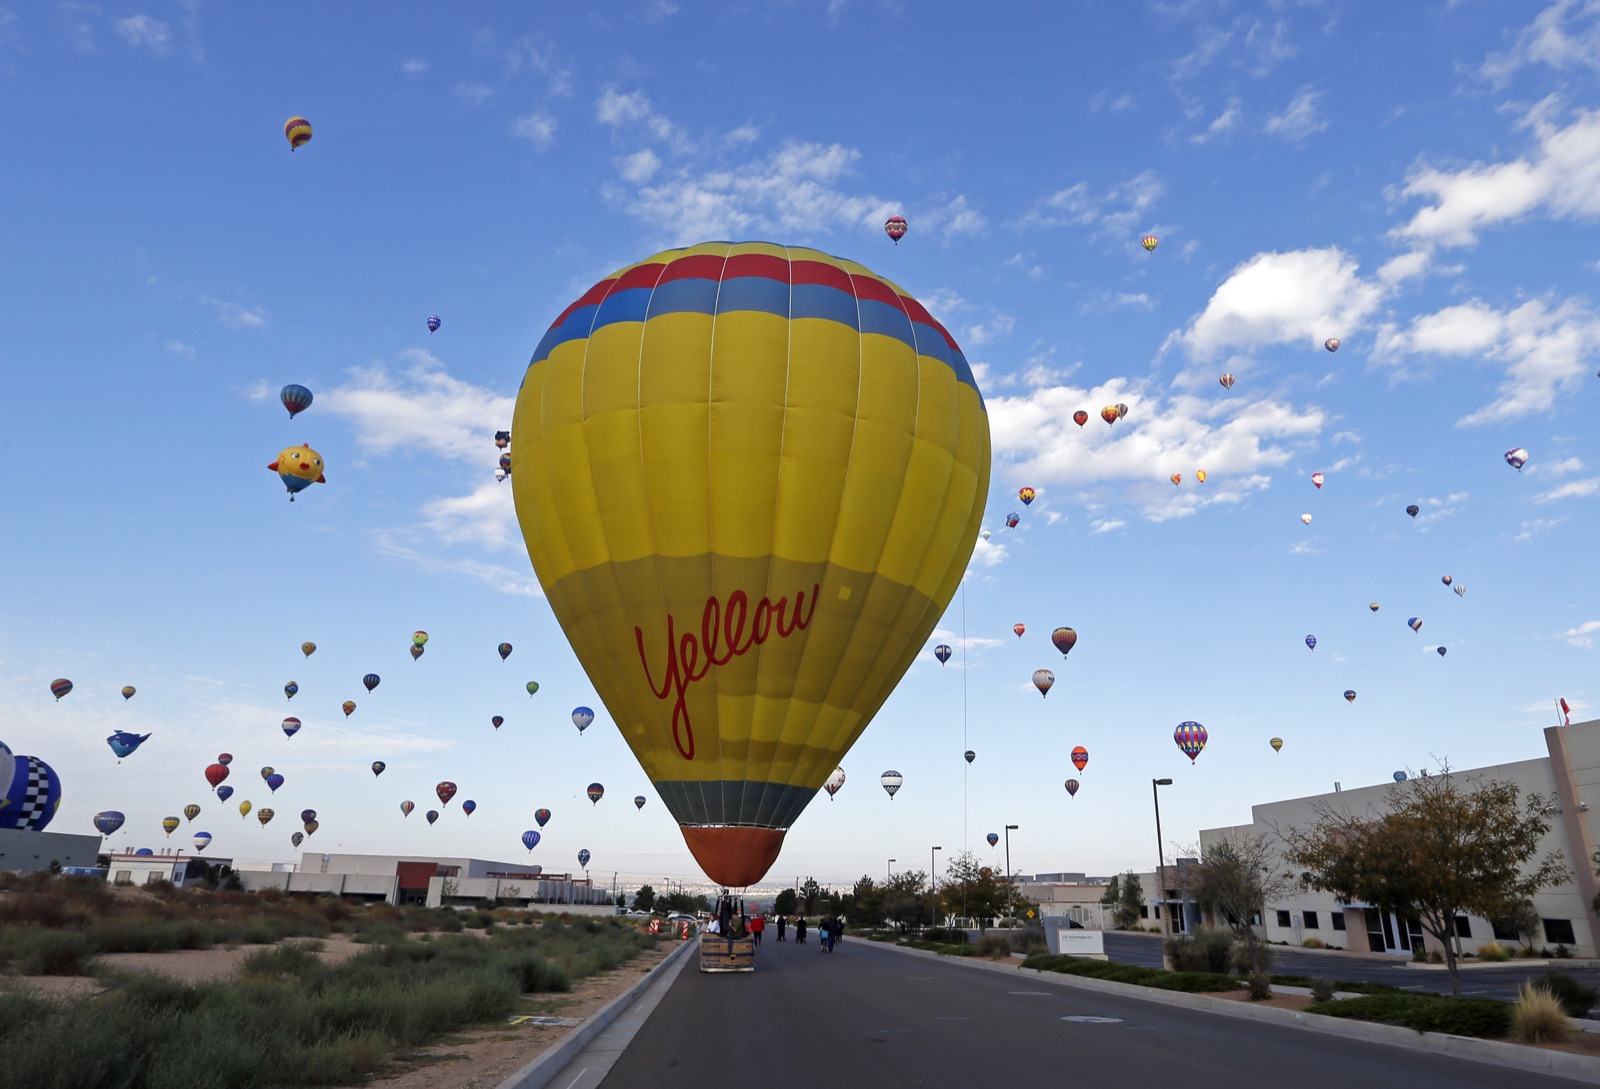 Một chiếc khí cầu được đặt tên là Yellow đang đậu lại bên đường, trong lúc xa xa là hàng trăm khí cầu khác đang bay lơ lửng trên trời. AIBF năm nay là lễ hội khí cầu lần thứ 44 được tổ chức ở Albuquerque, New Mexico. Ảnh chụp bởi Andres Leighton.